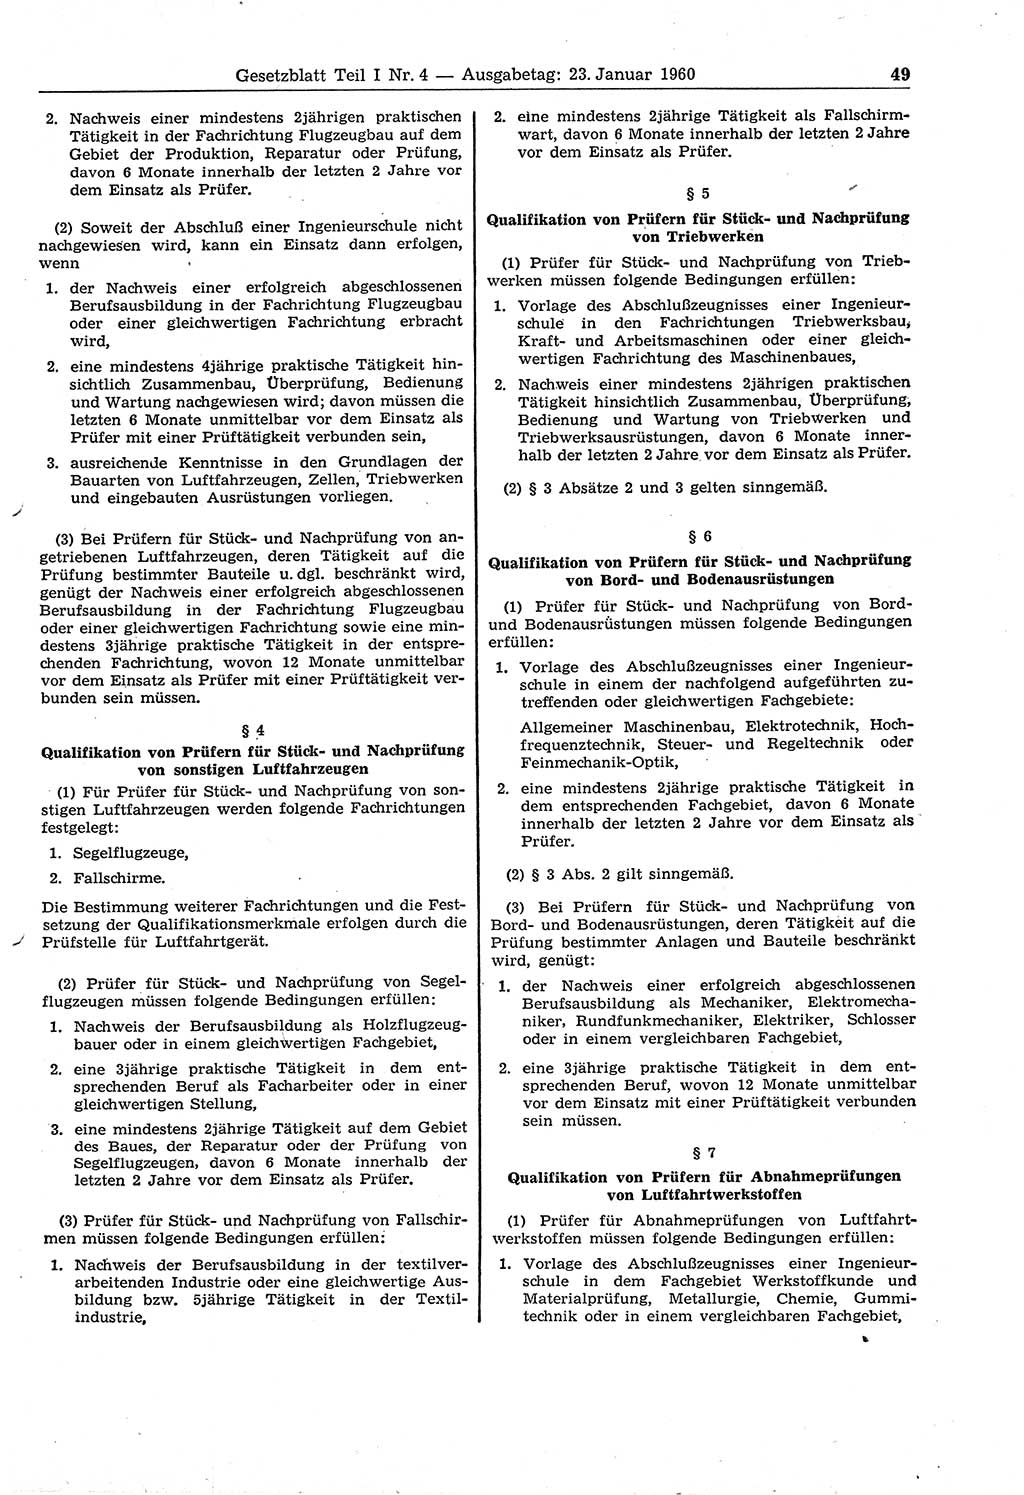 Gesetzblatt (GBl.) der Deutschen Demokratischen Republik (DDR) Teil Ⅰ 1960, Seite 49 (GBl. DDR Ⅰ 1960, S. 49)